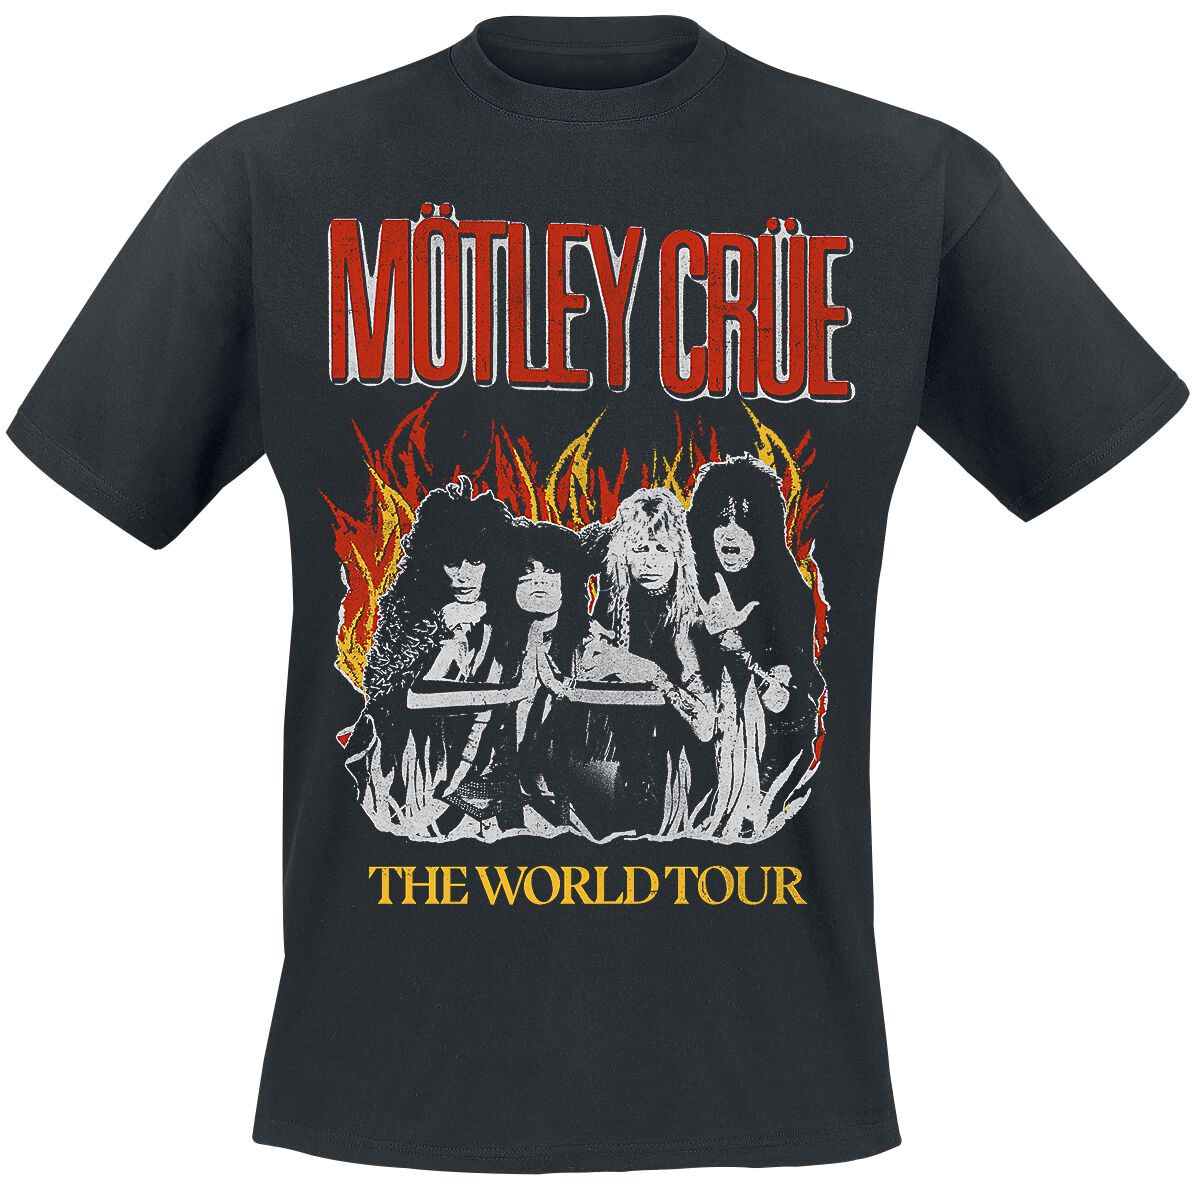 Mötley Crüe T-Shirt - Vintage World Tour Flames - M bis 4XL - für Männer - Größe 4XL - schwarz  - Lizenziertes Merchandise!